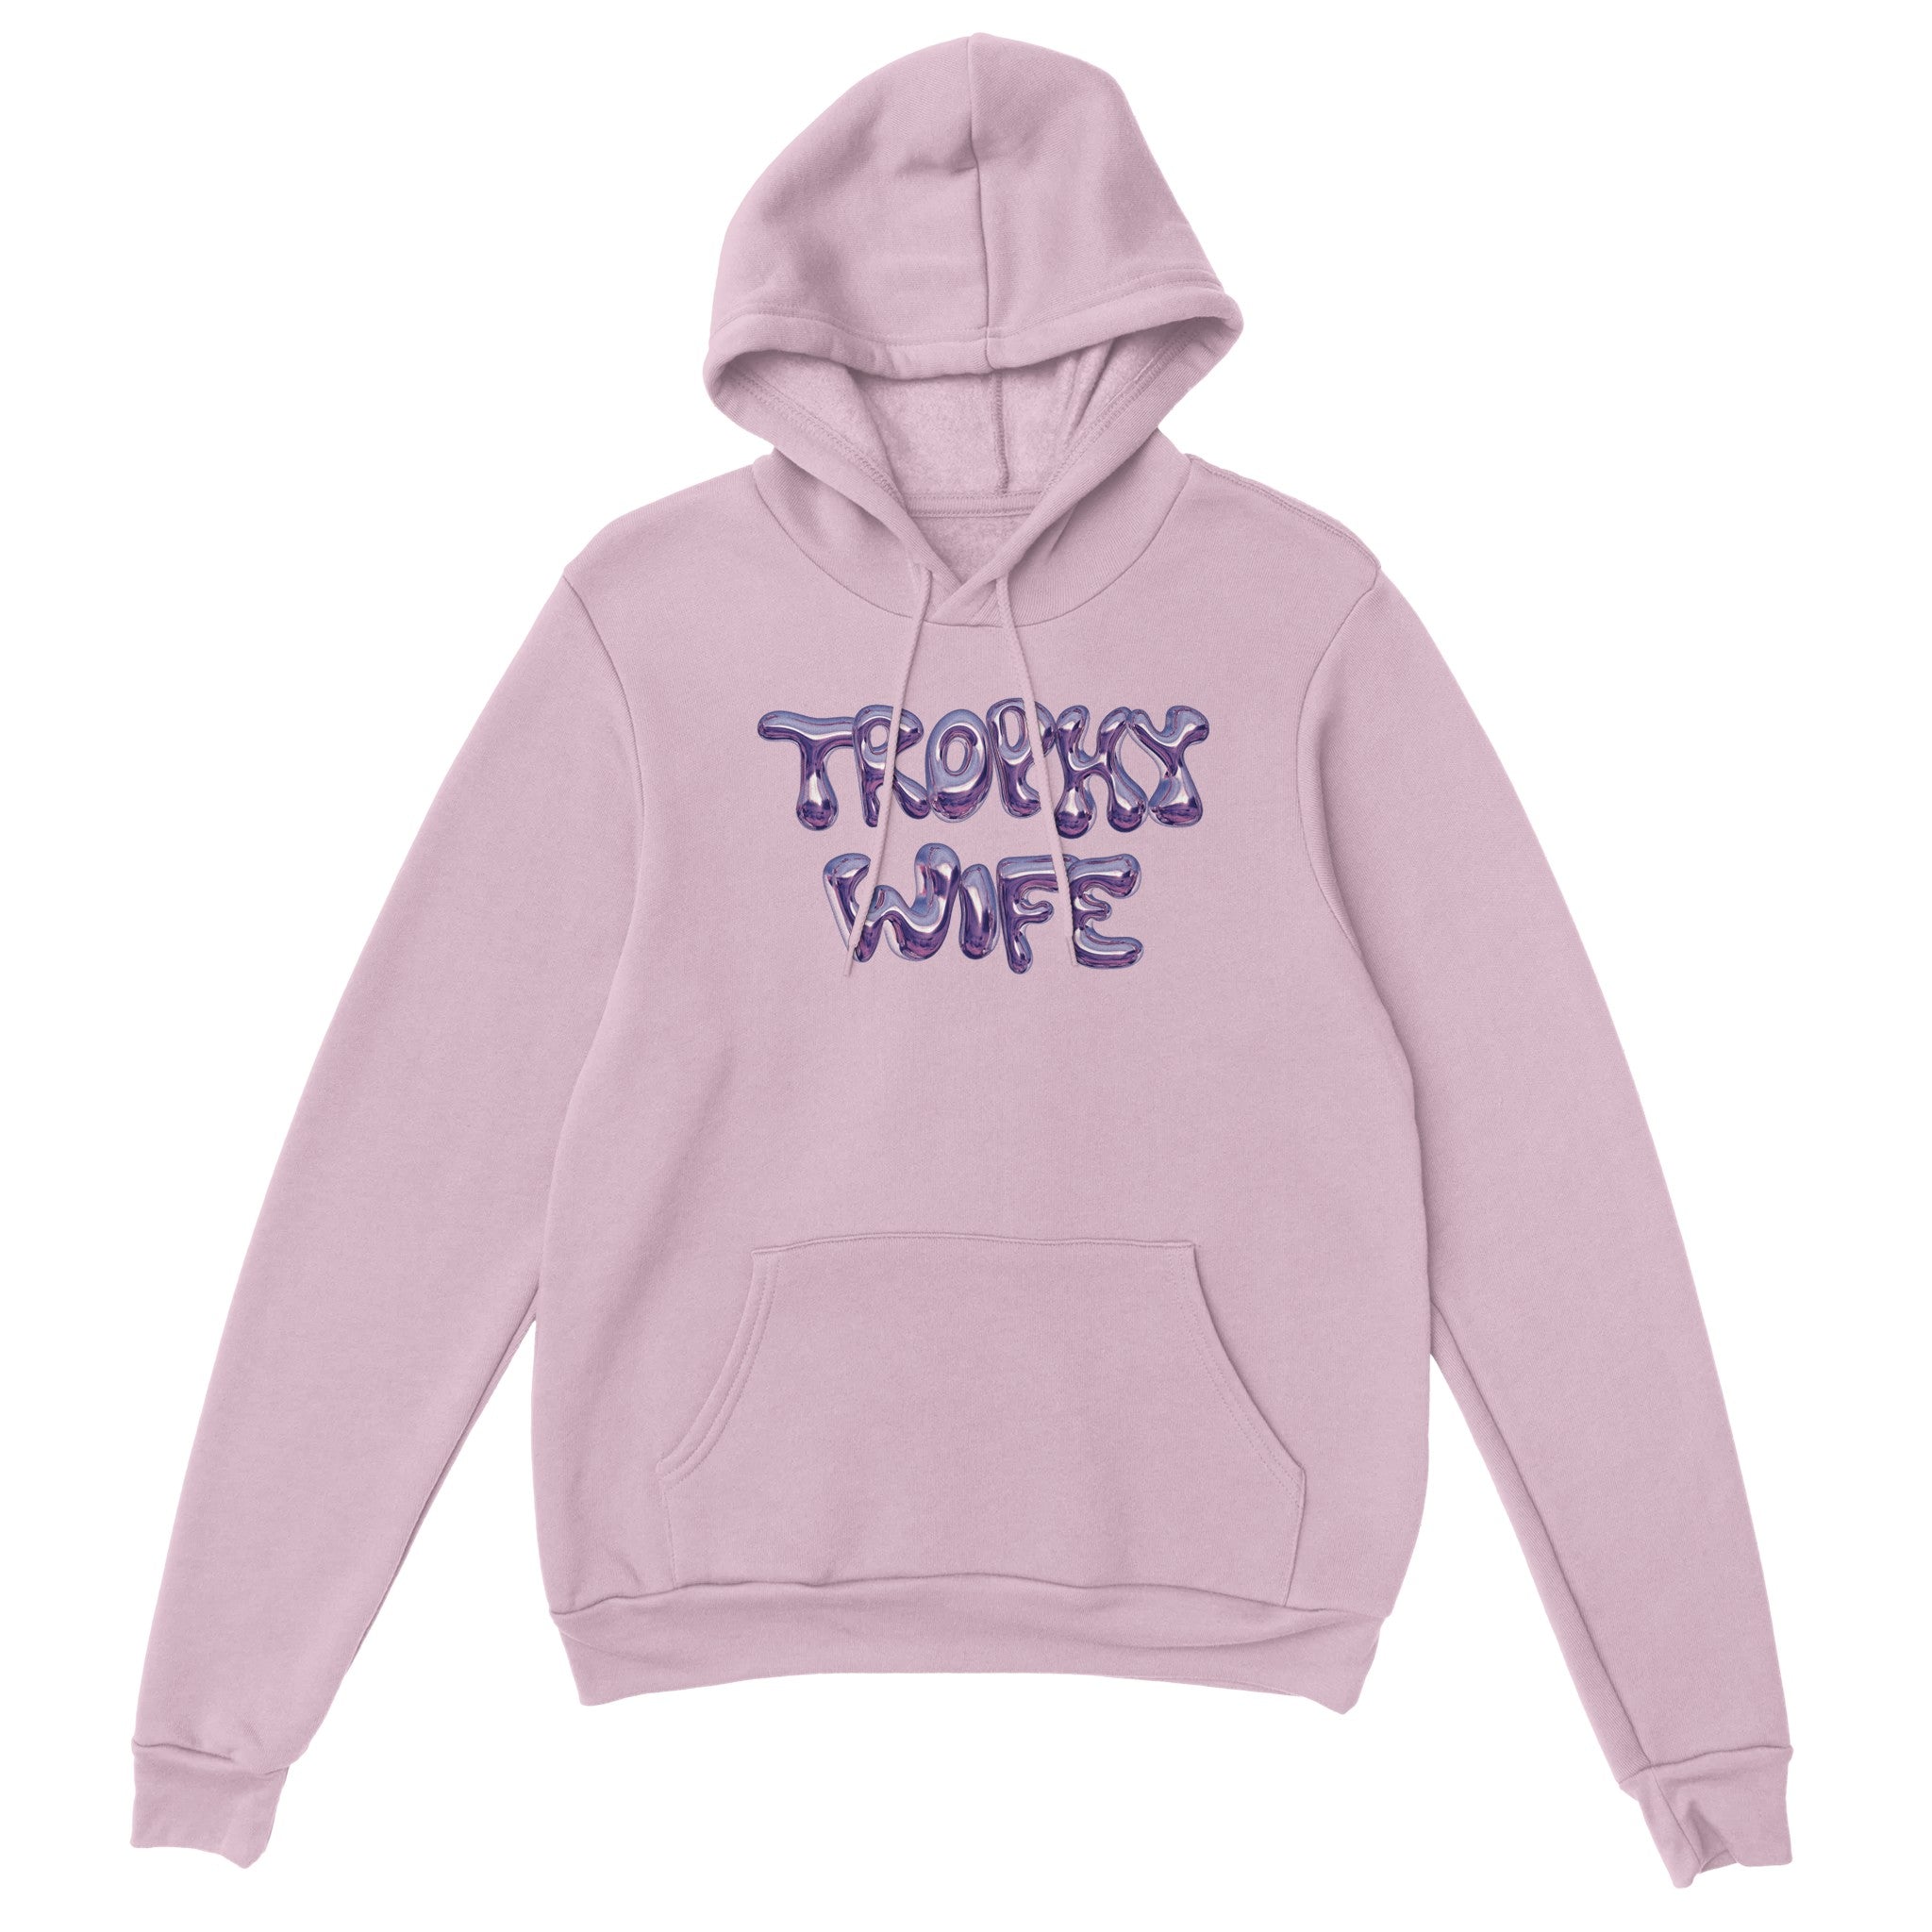 'Trophy Wife' hoodie - In Print We Trust